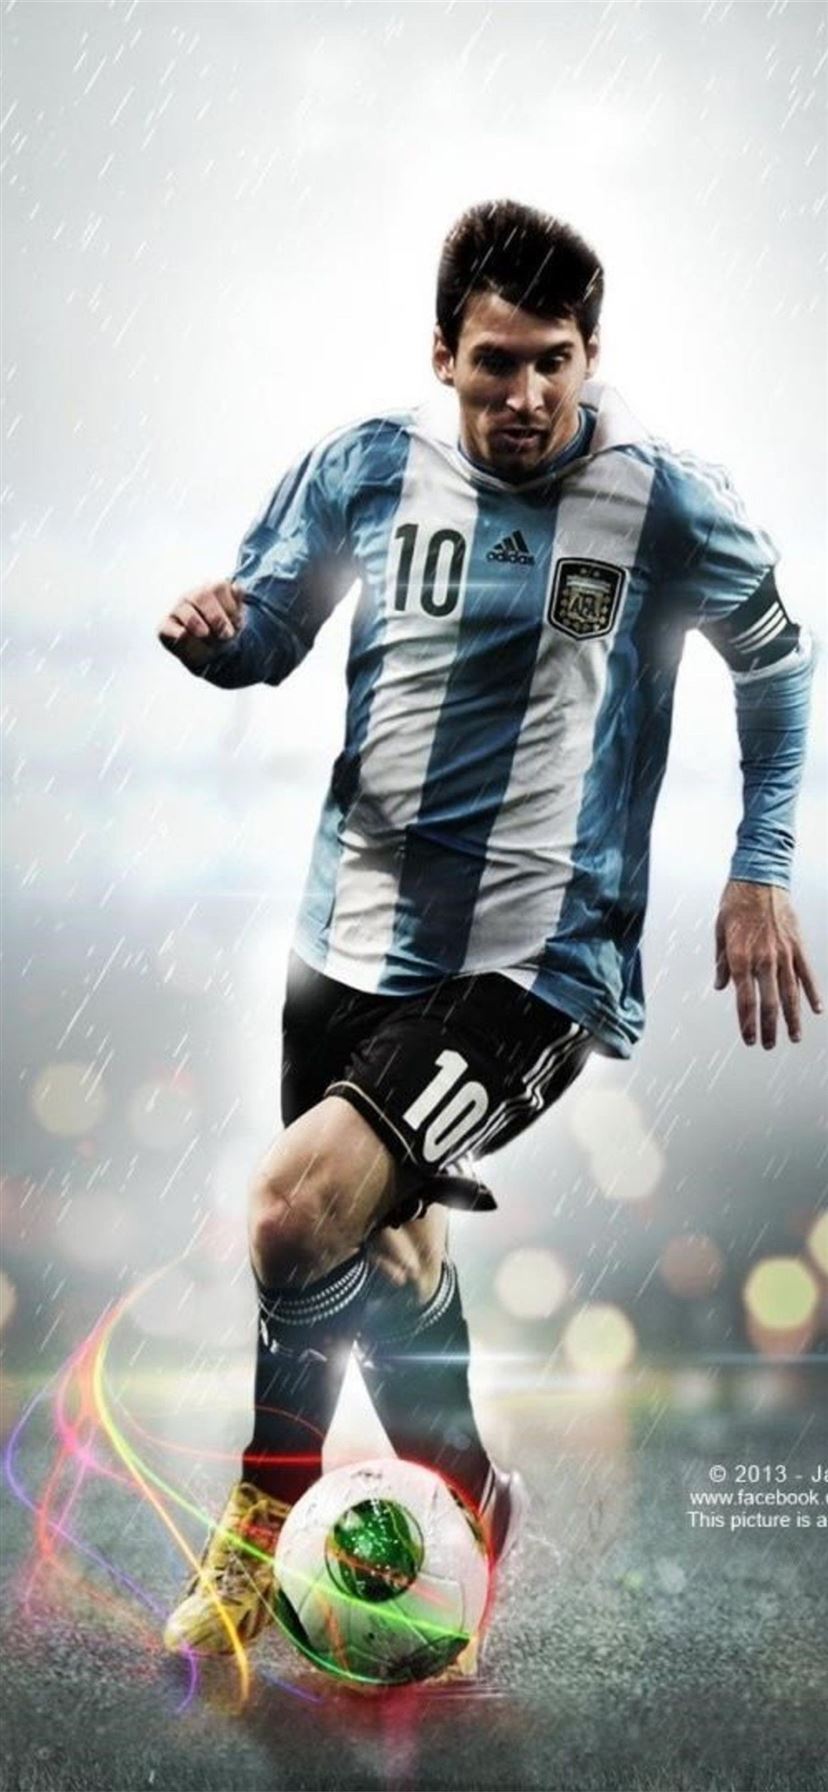 Nếu bạn là một fan của Messi và đang sở hữu một chiếc iPhone 11, thì chúng tôi đã sẵn sàng cung cấp cho bạn hình nền Messi đẹp mắt và chất lượng cao nhất. Hãy truy cập trang web của chúng tôi để tìm thấy những hình nền tuyệt đẹp nhé.